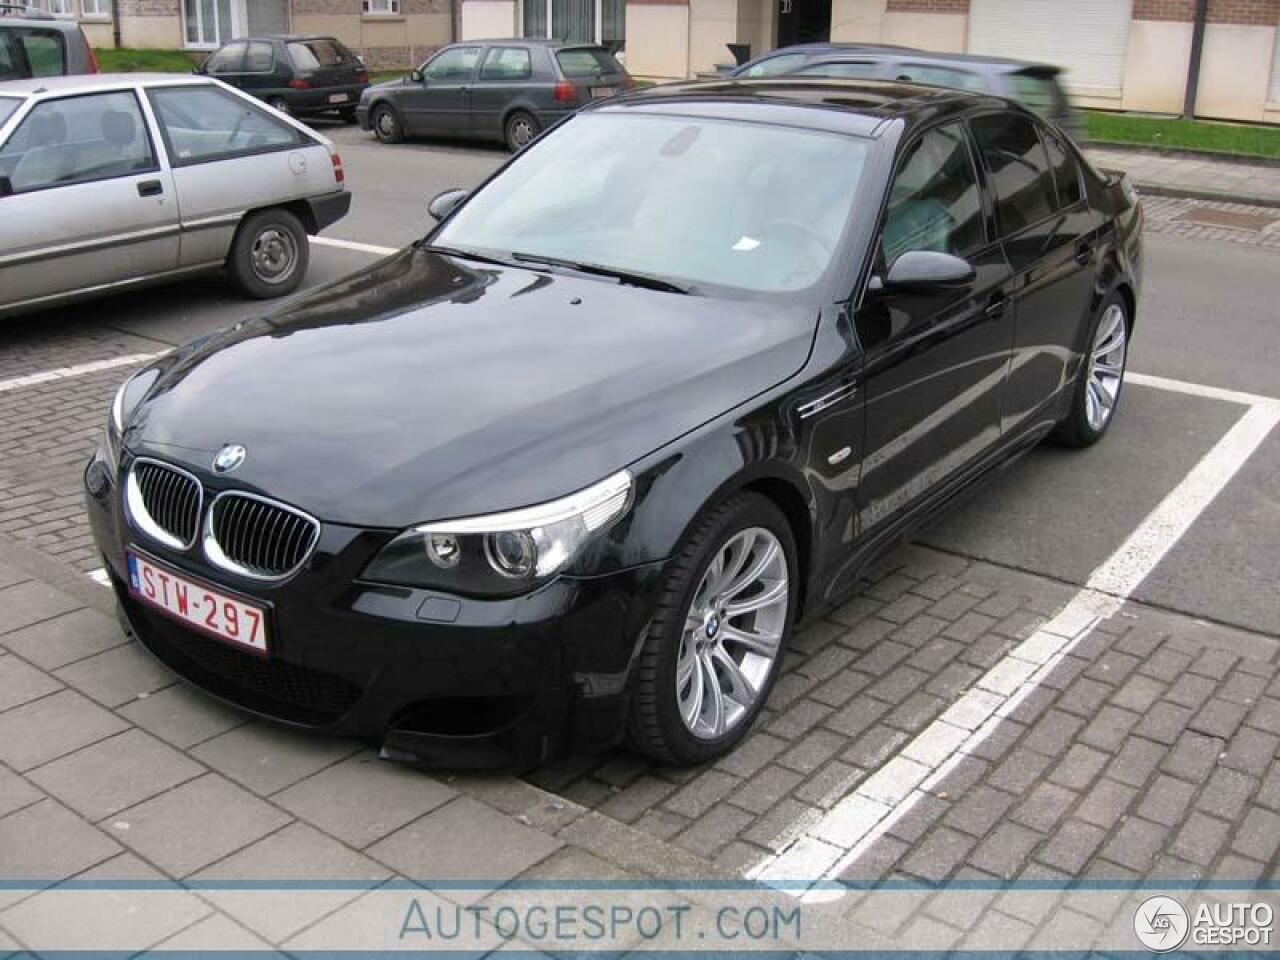 BMW M5 E60 2005 - 19 Dezember 2021 - Autogespot